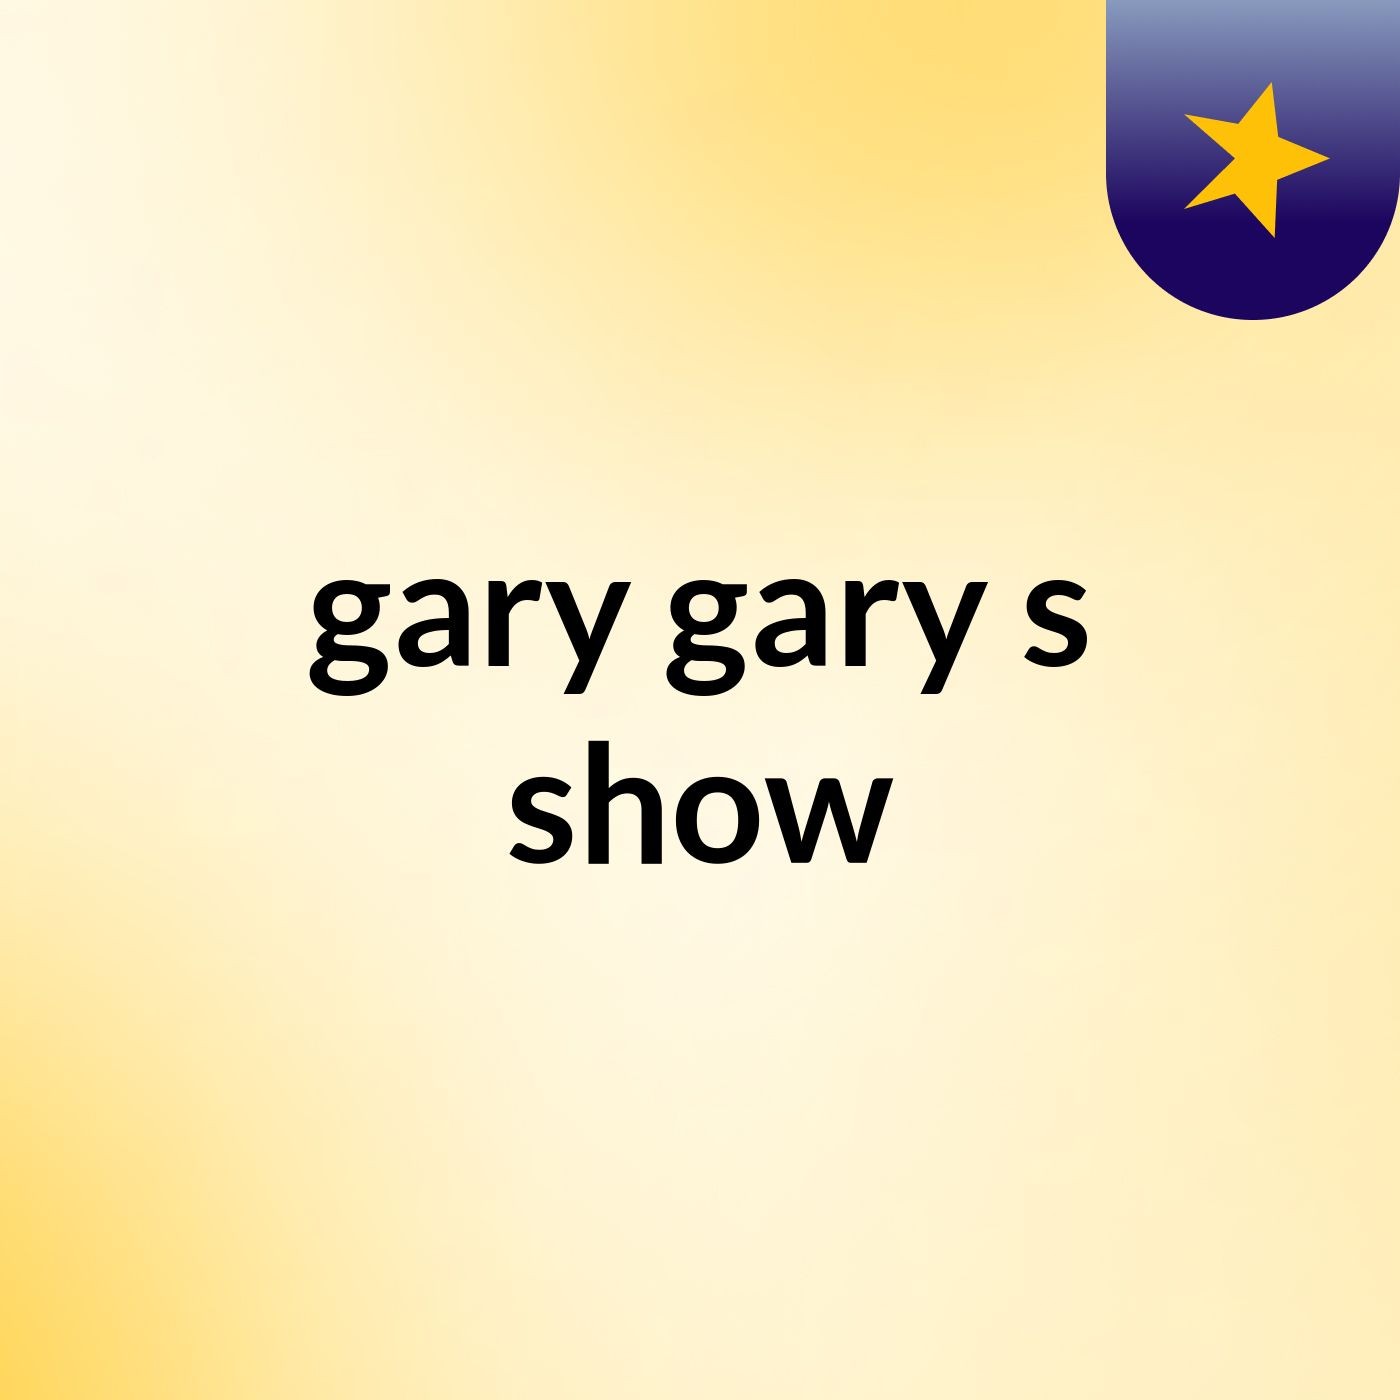 gary gary's show